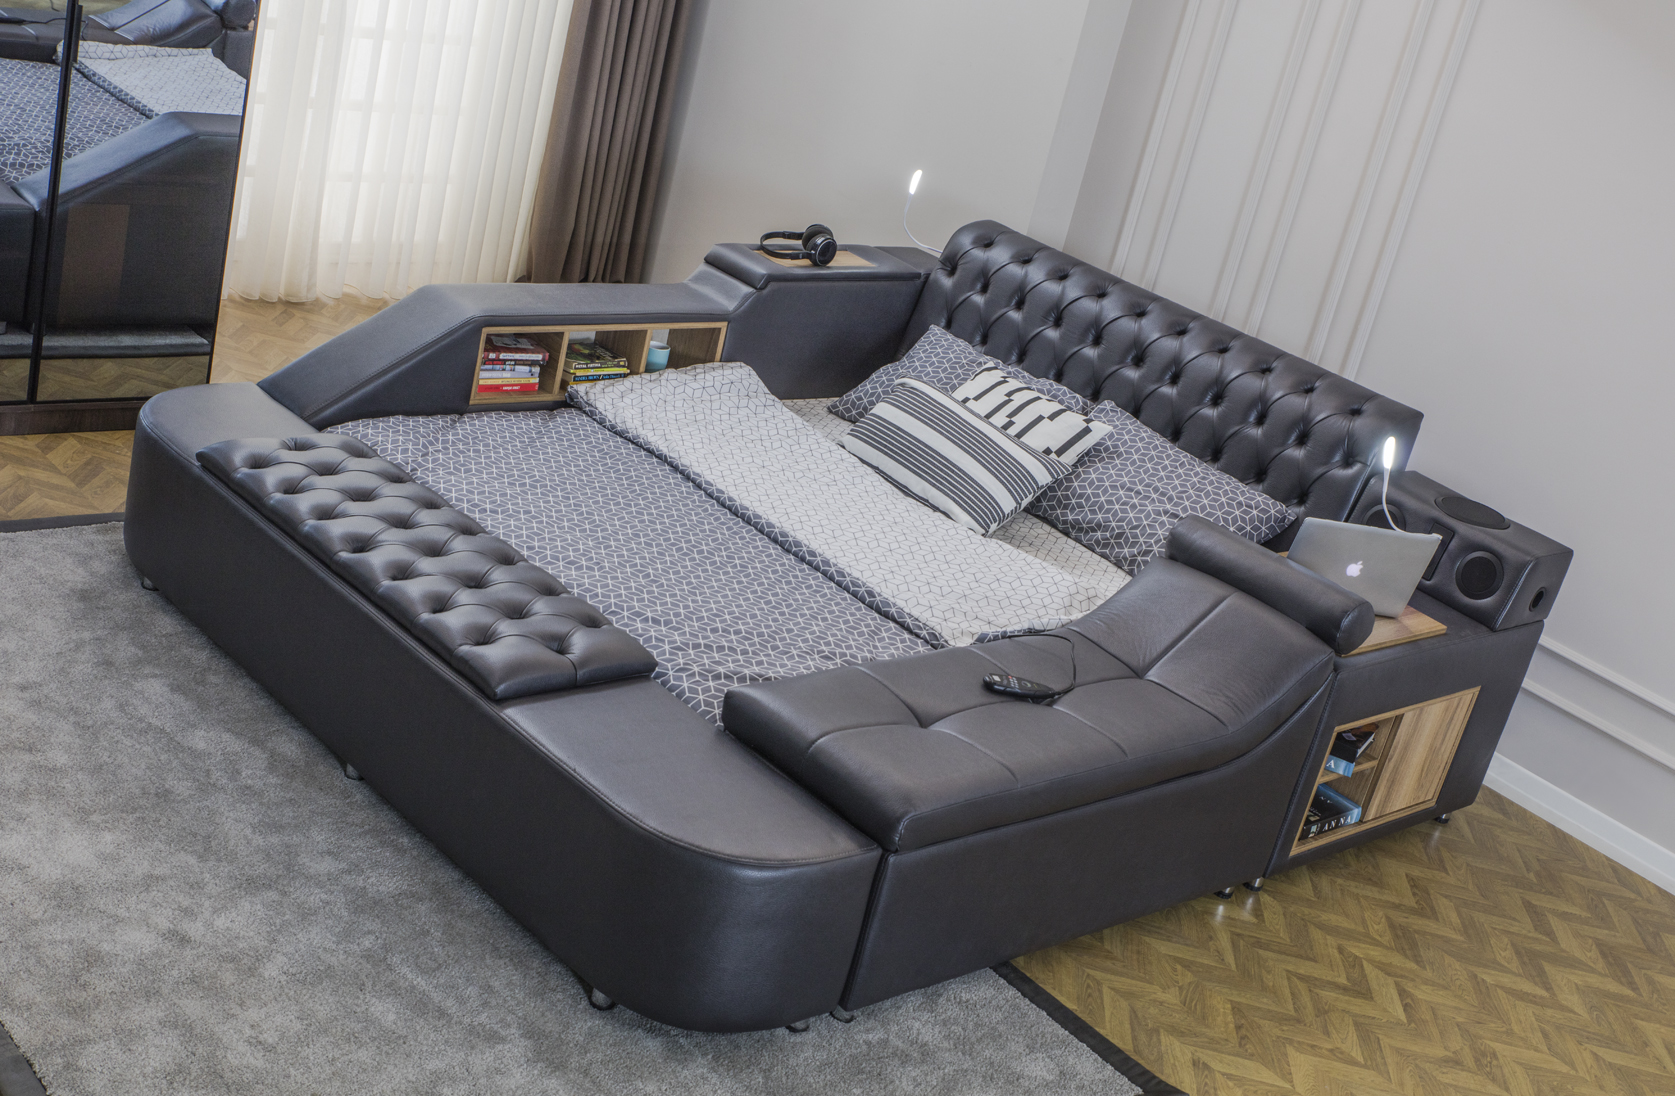 Eymense Dorwell Smart Bett mit Massagesitz & Bluetooth